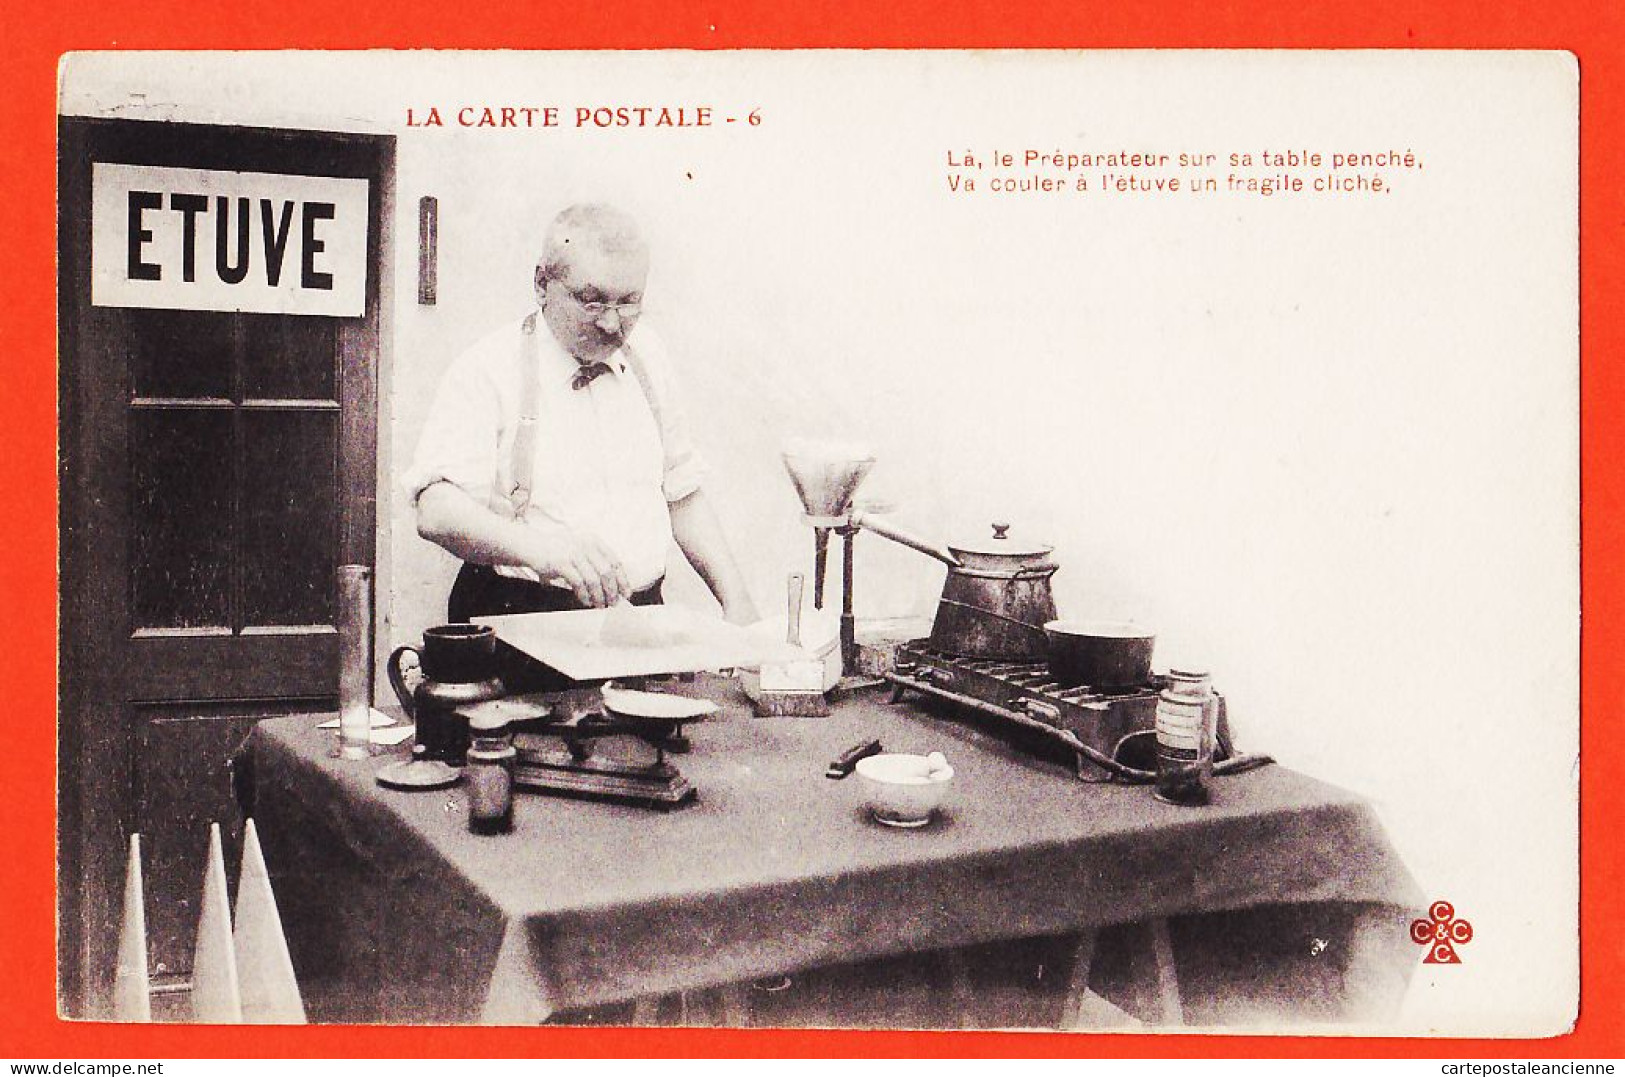 06287 / ♥️ ⭐ ◉  Métier Photographe Ed. LA CARTE POSTALE (6) Préparateur Table Penché Couler Etuve Fragile Cliché 1900s  - Kunsthandwerk